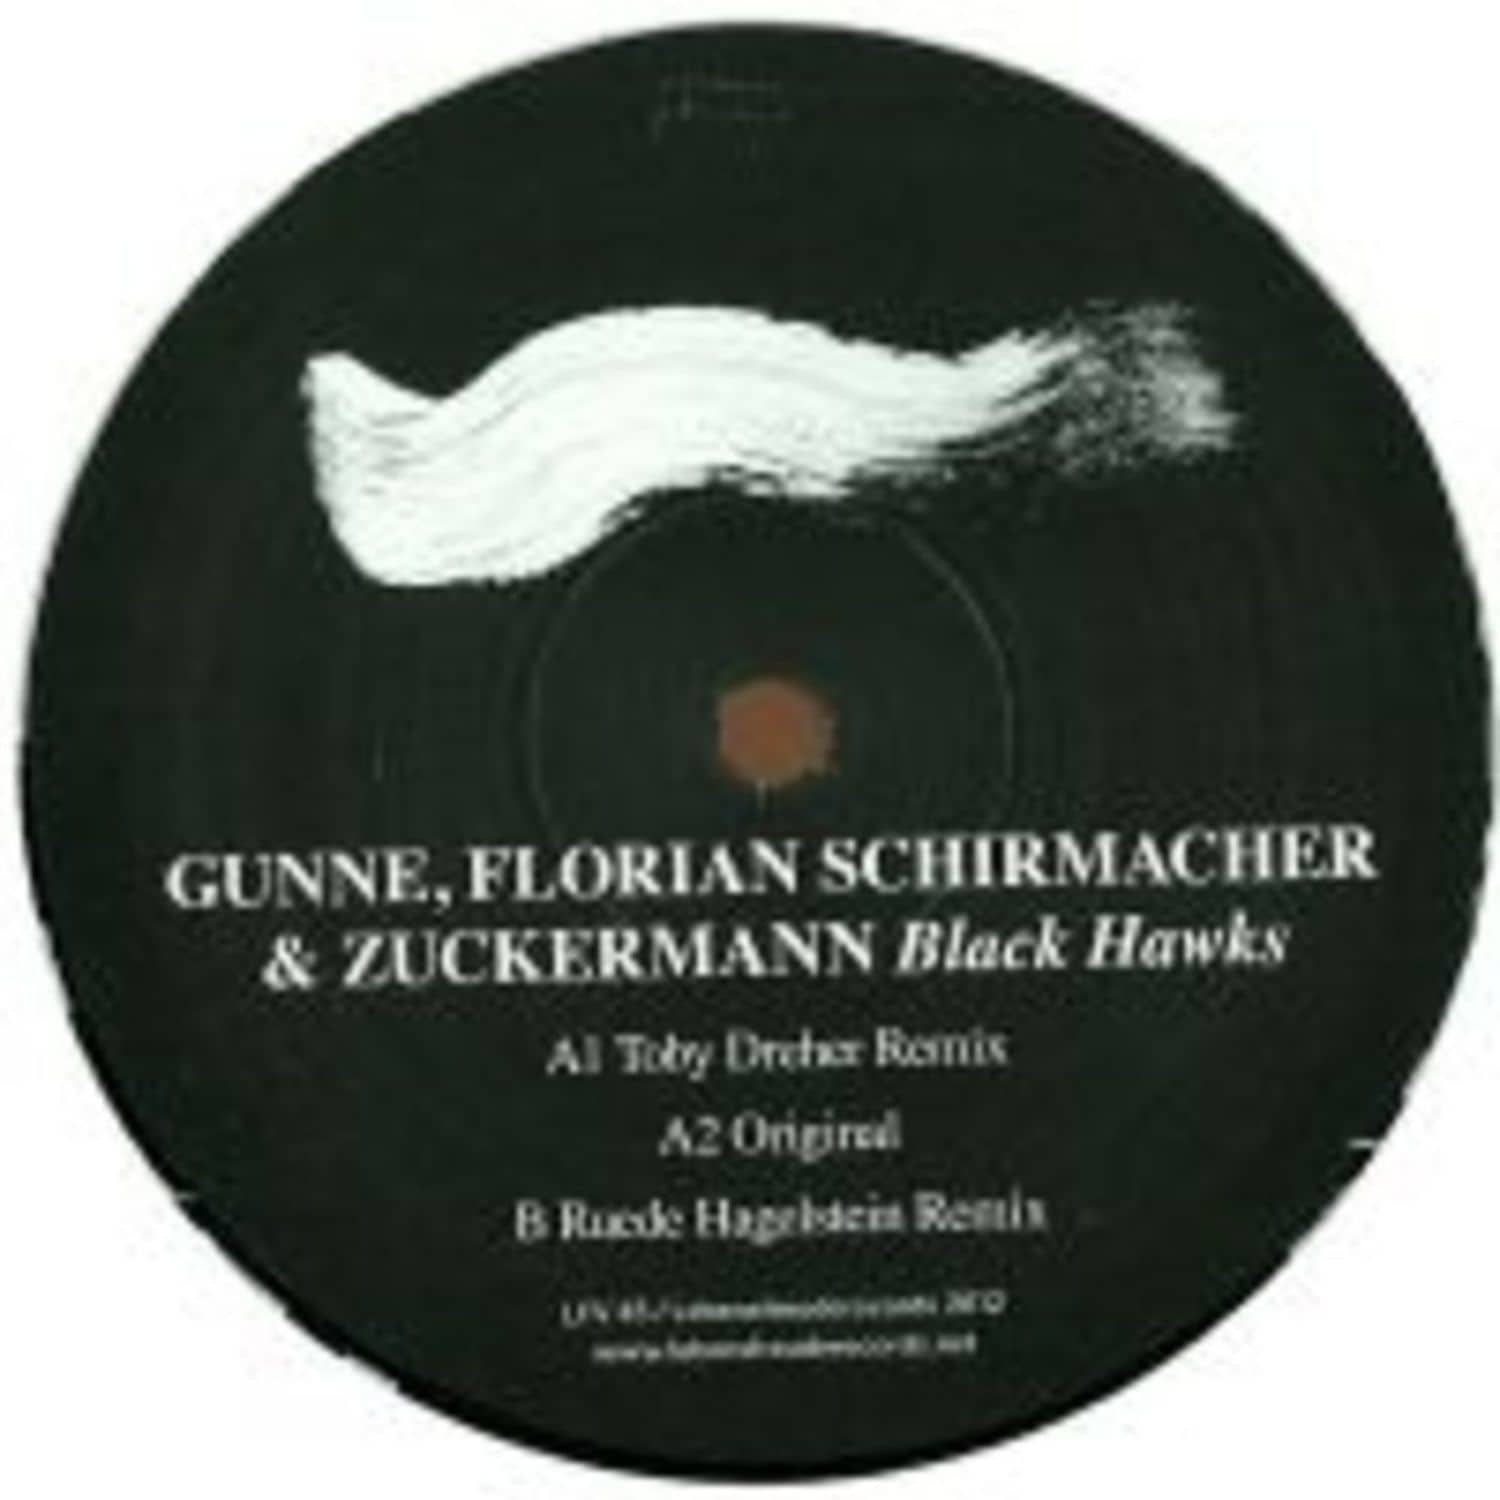 Gunne, Florian Schirmacher & Zuckermann - BLACK HAWKS EP